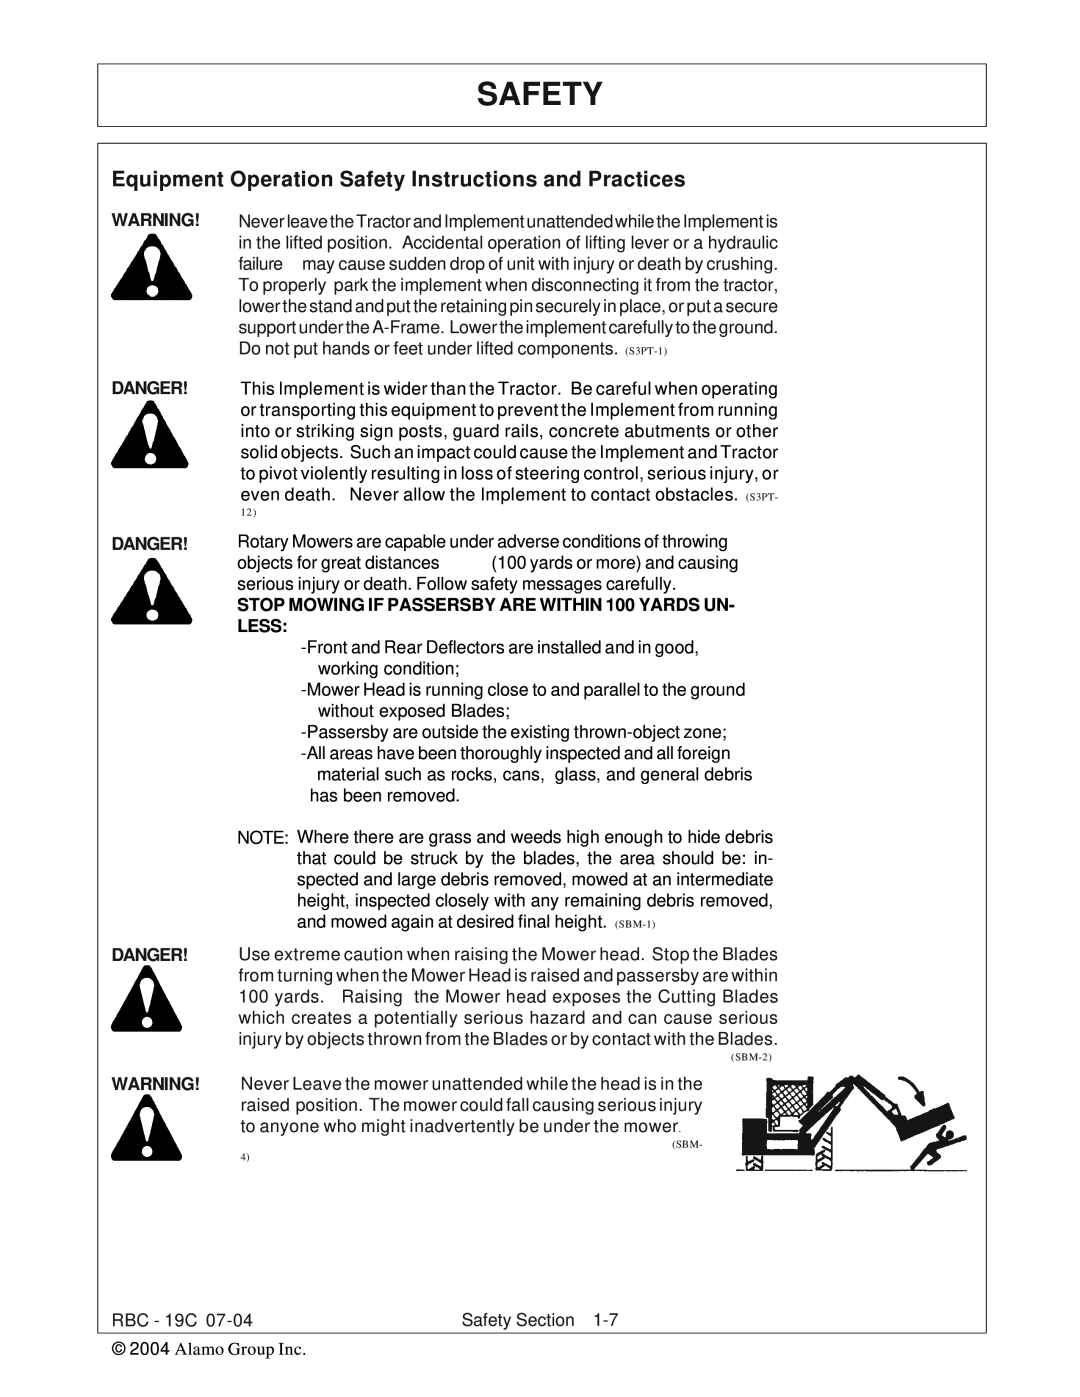 Tiger RBF-19C manual Safety, Danger Danger Danger 